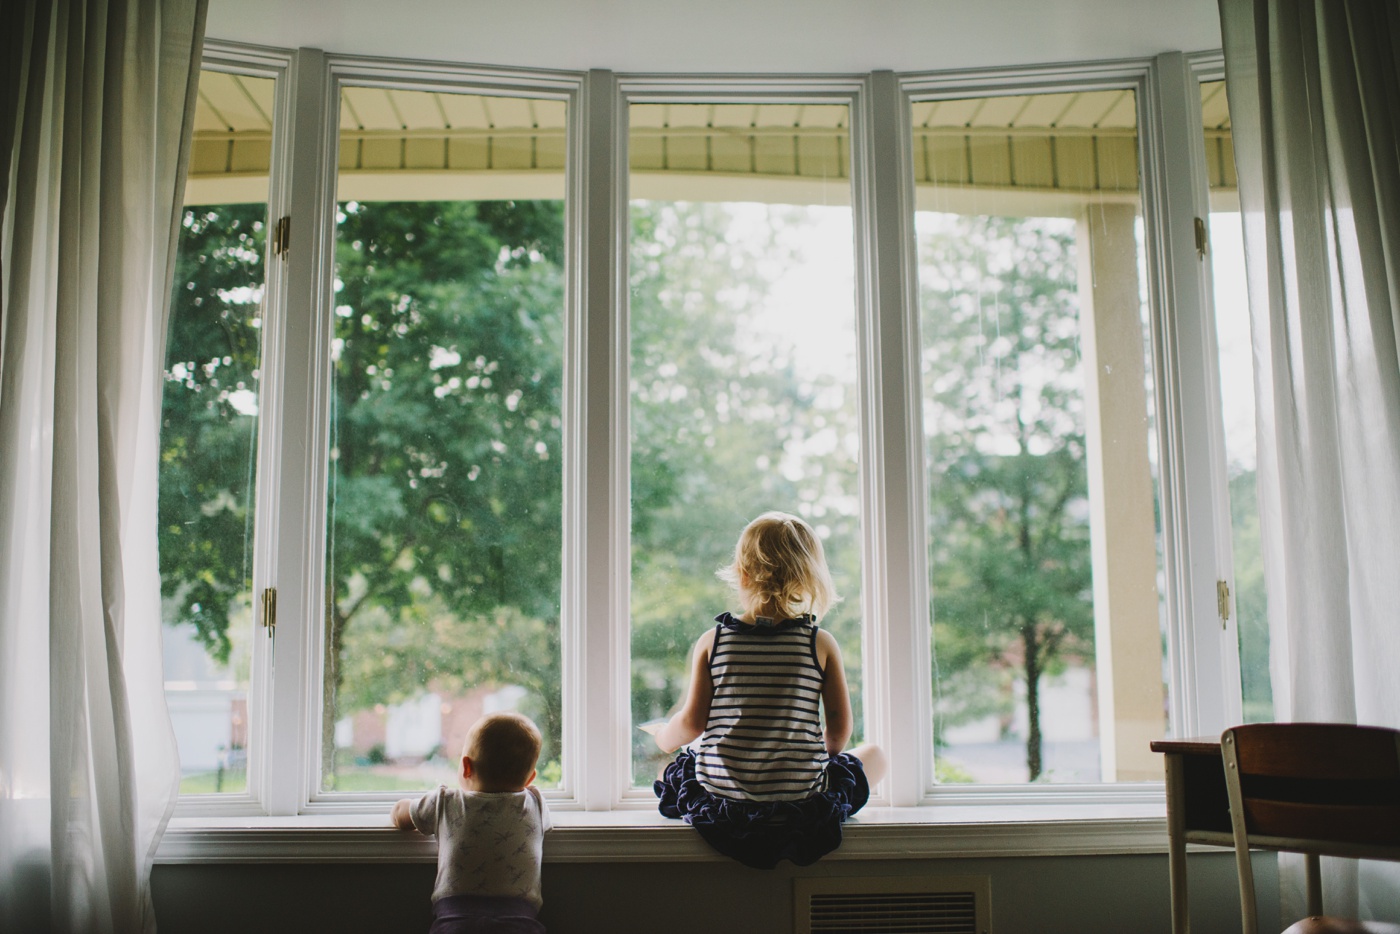 Two little girls in window